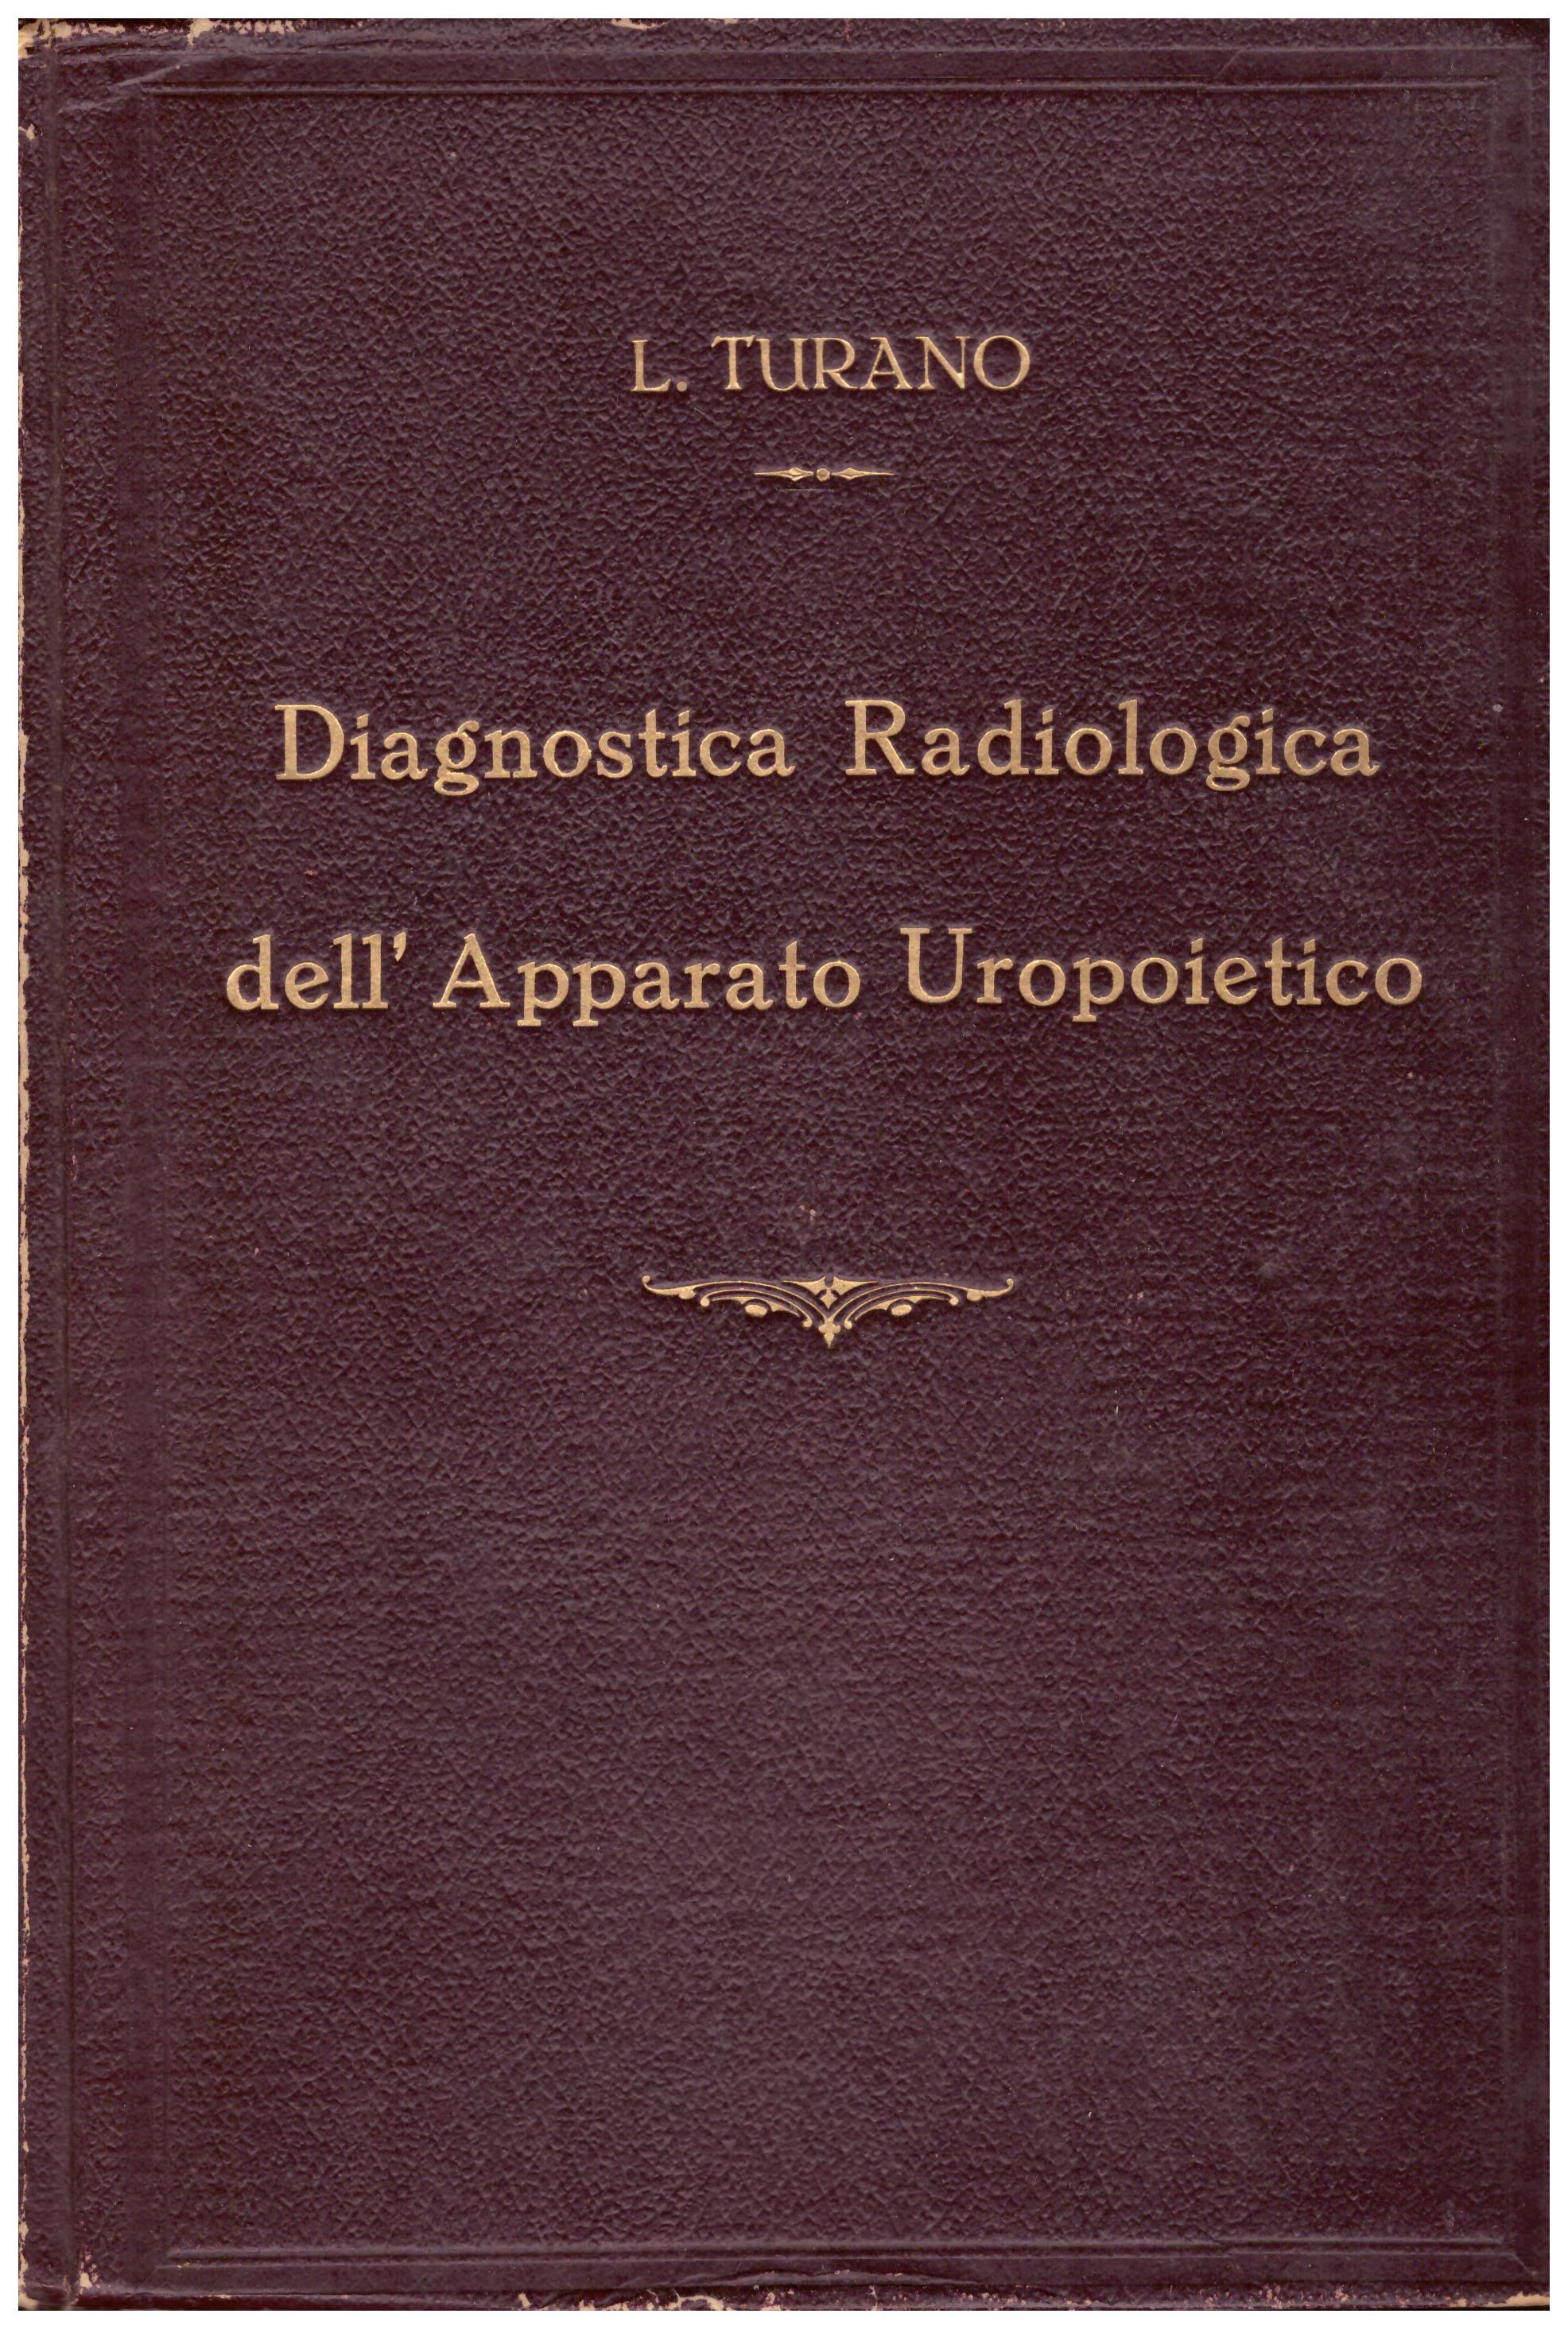 Titolo: Diagnostica radiologica dell'apparato uropoietico    Autore: L.Turano    Editore: Arti grafiche Aldo Chicca Tivoli 15 settembre 1944